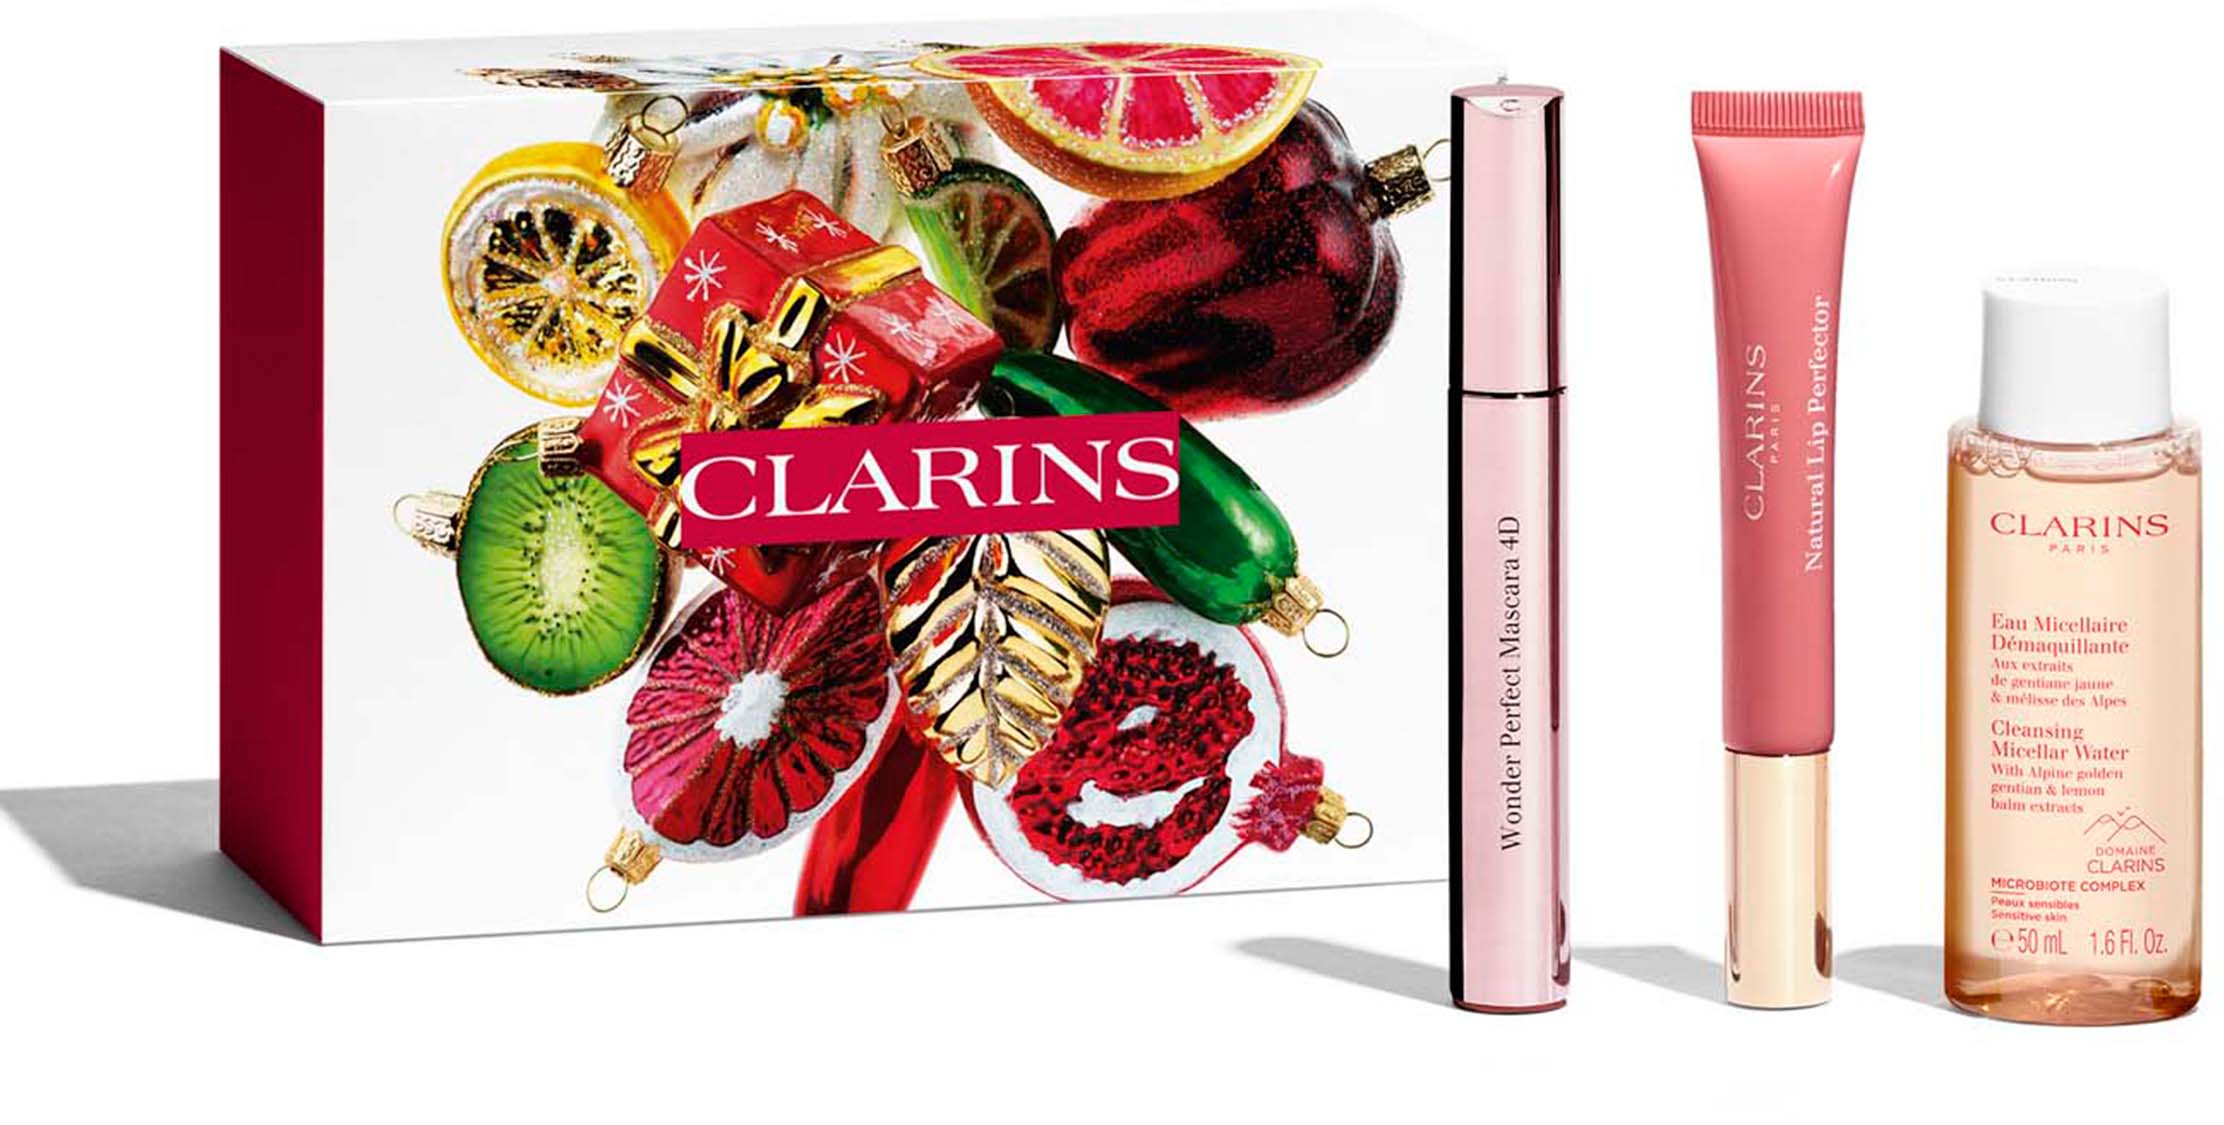 Clarins Makeup Favorites Gift Set